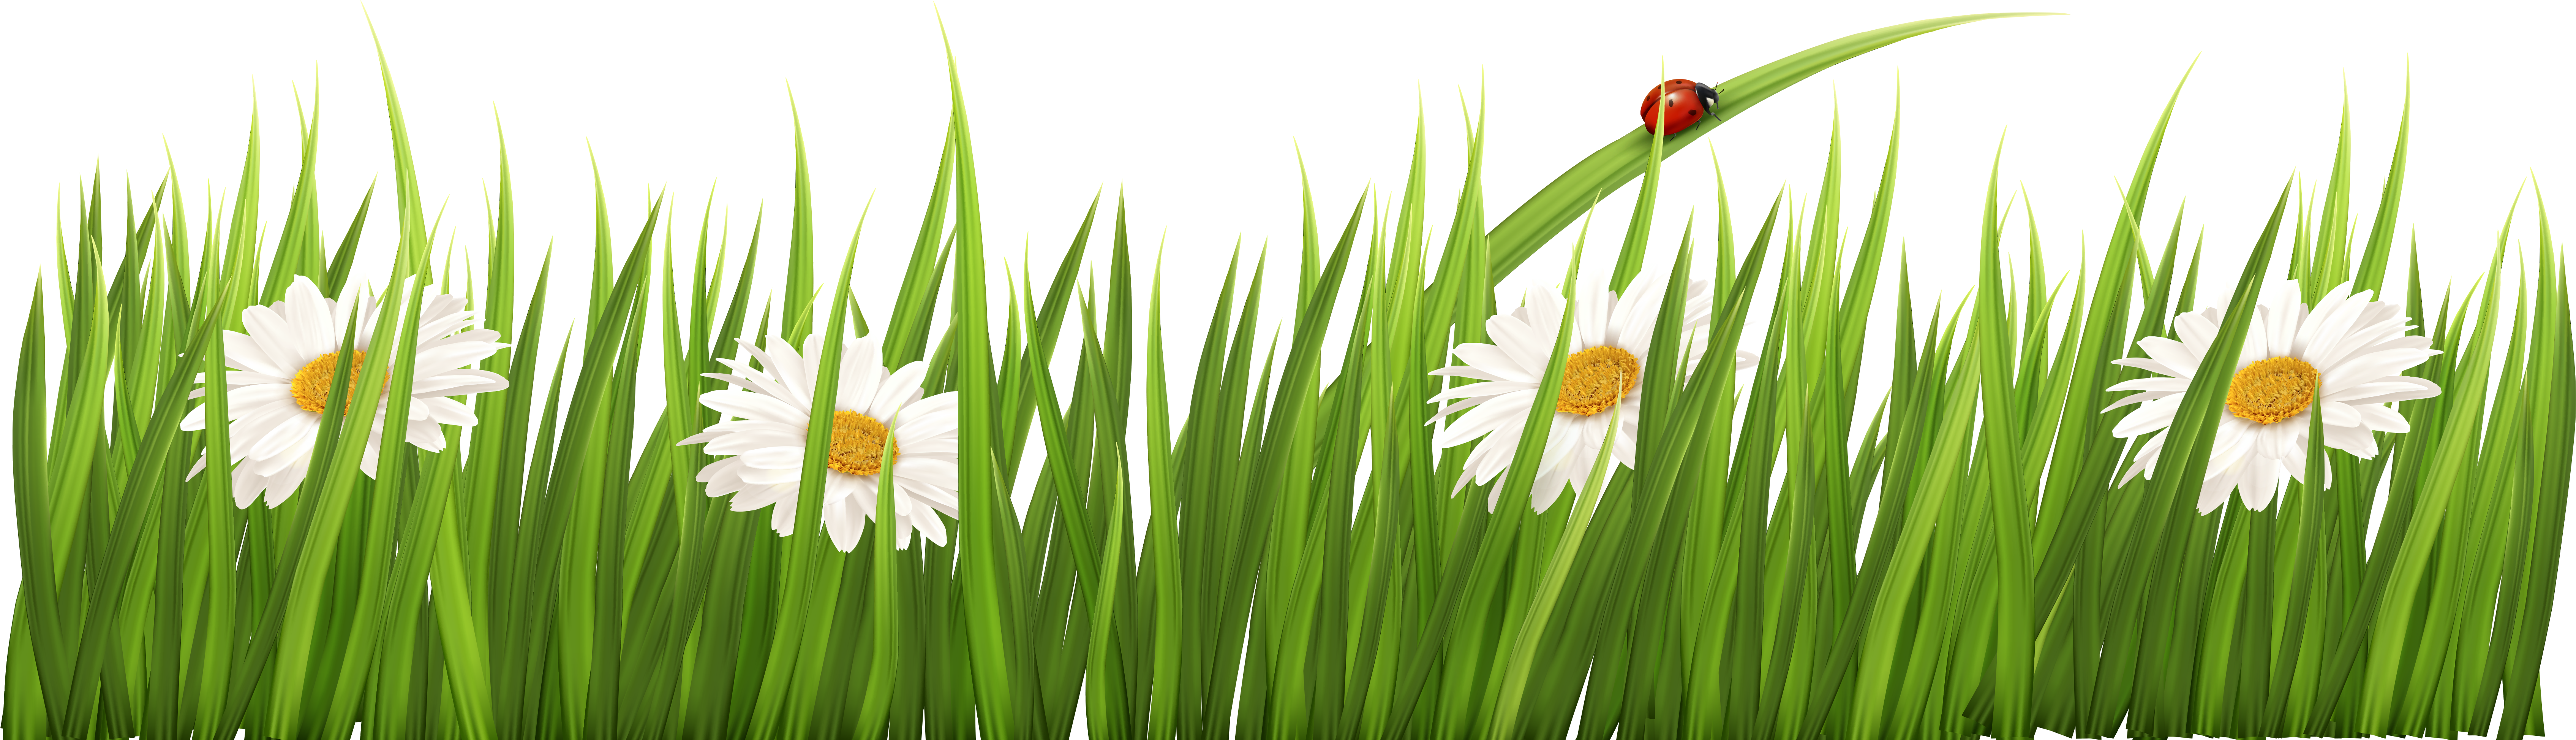 Картинка травка на прозрачном фоне. Травка с цветочками. Луг на белом фоне. Полоска травы. Зеленая трава полоса.